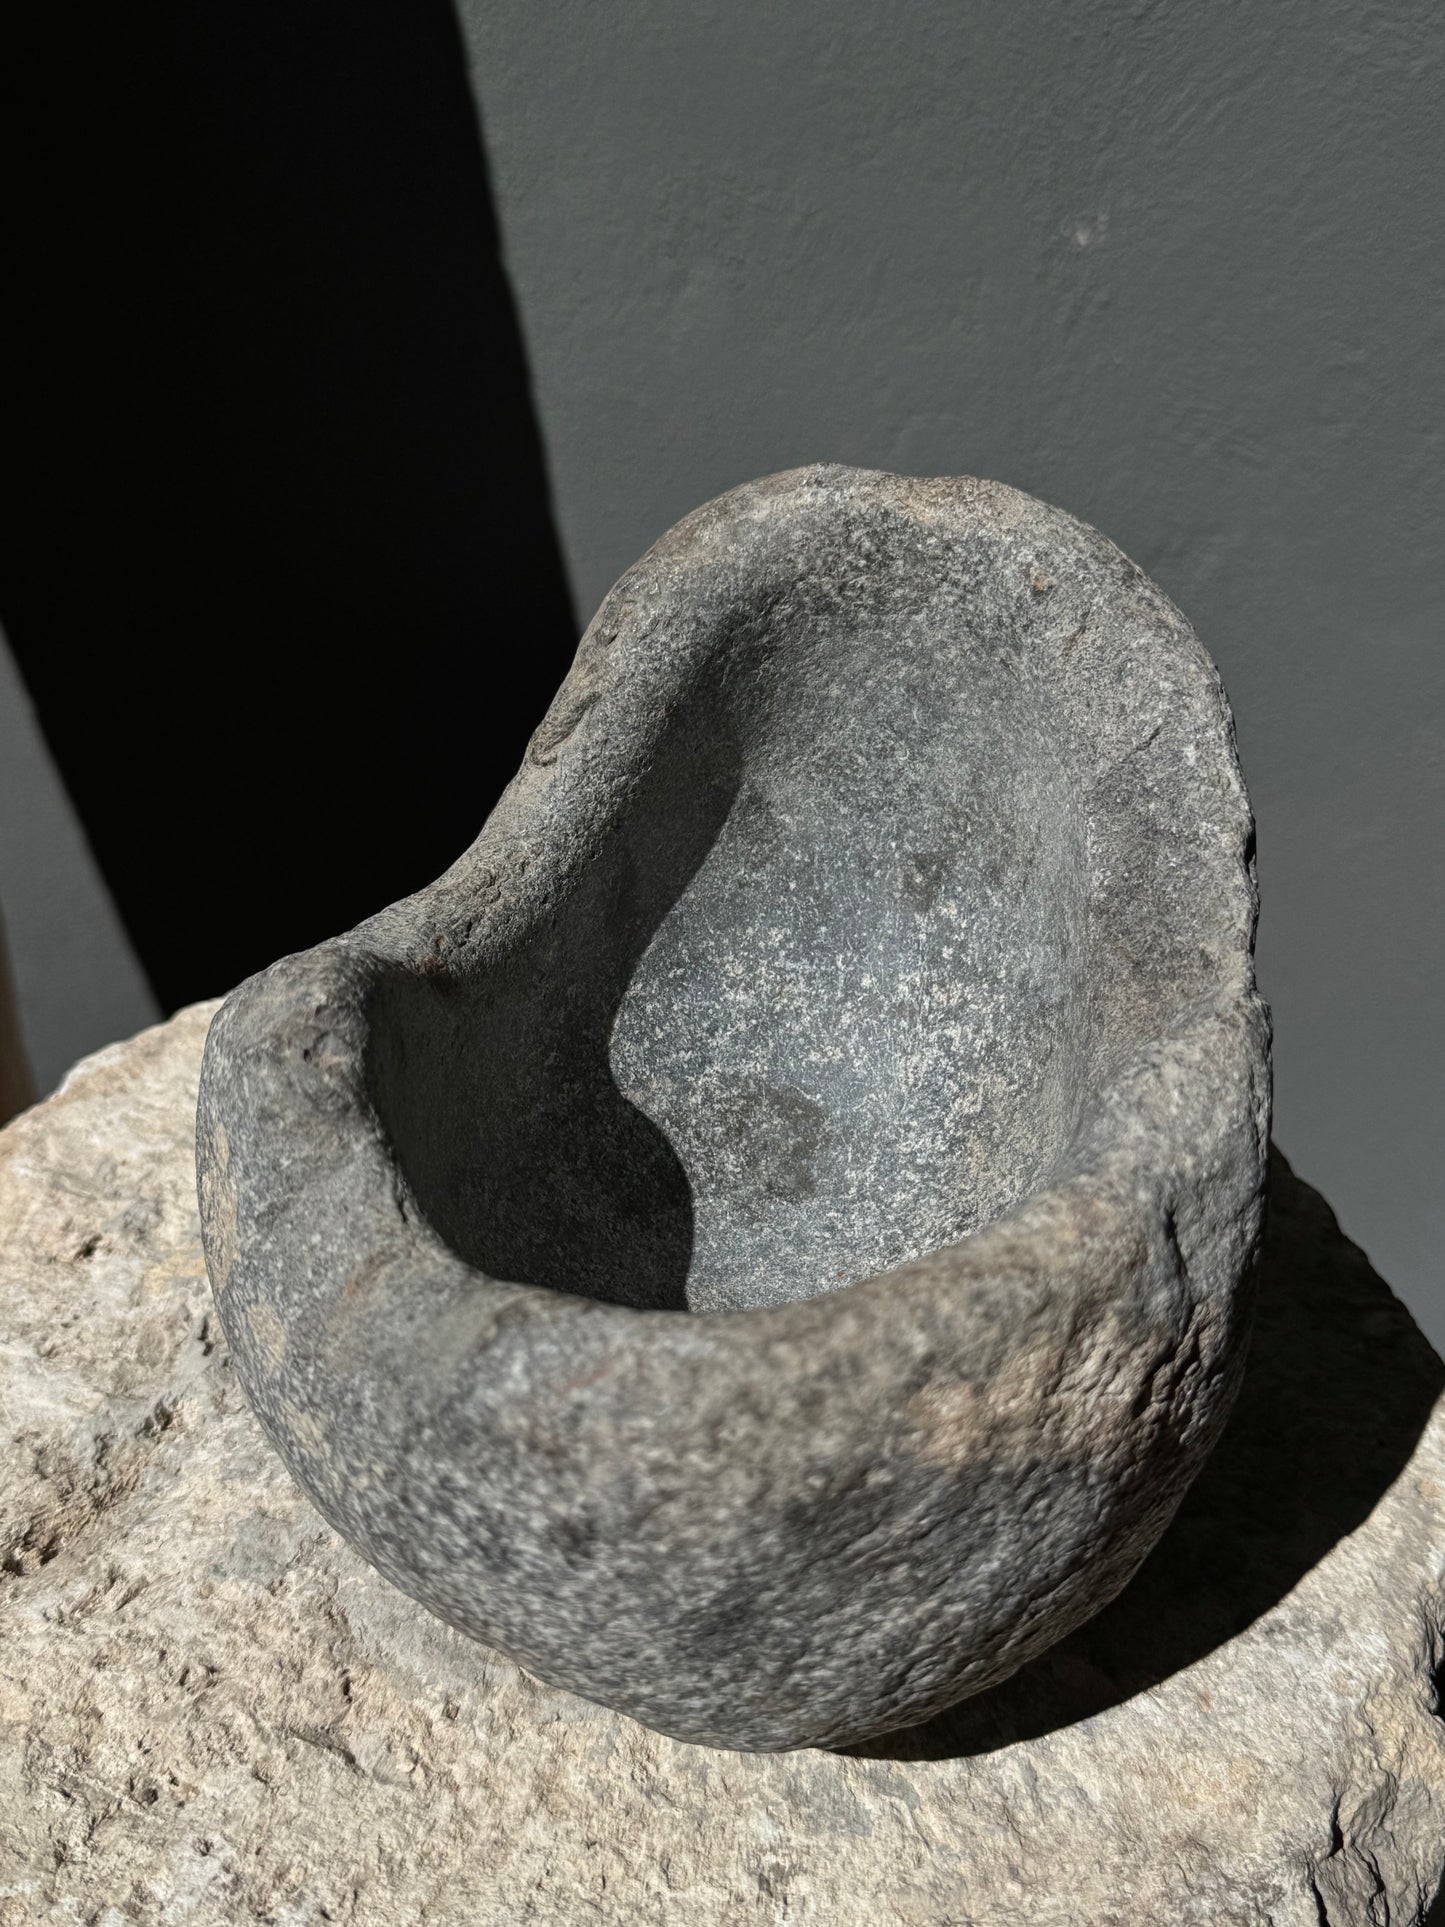 Primitive River Stone Mortar With Pestle From San Luis Potosí, Mexico | Mortero Primitivo De Piedra, SLP